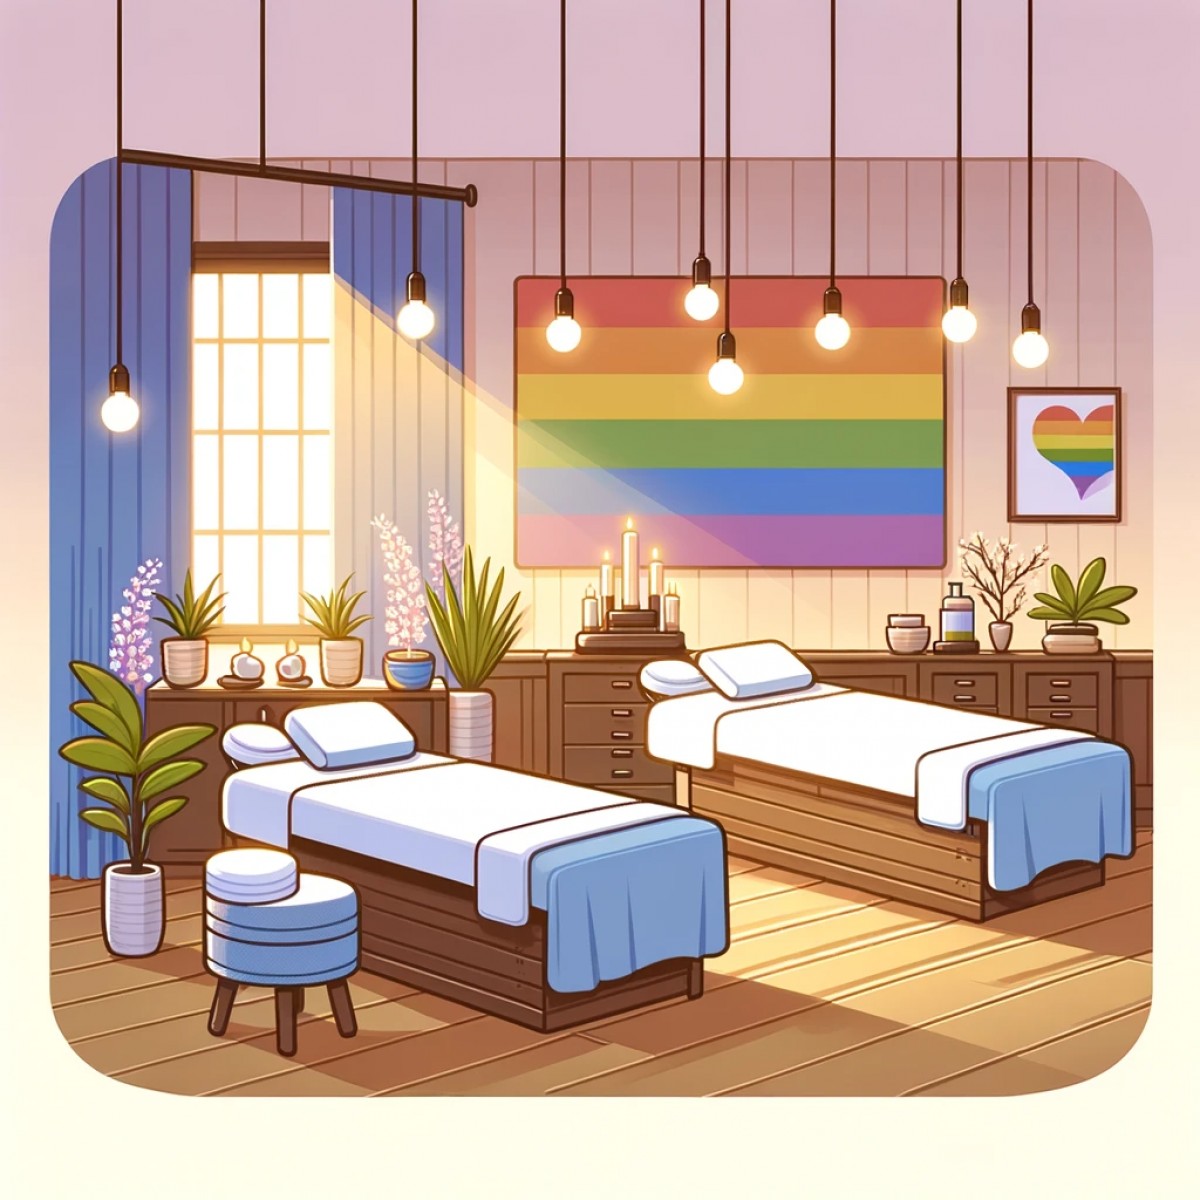 Détente et bien-être pour tous : les salons de massage qui embrassent l'esprit LGBT